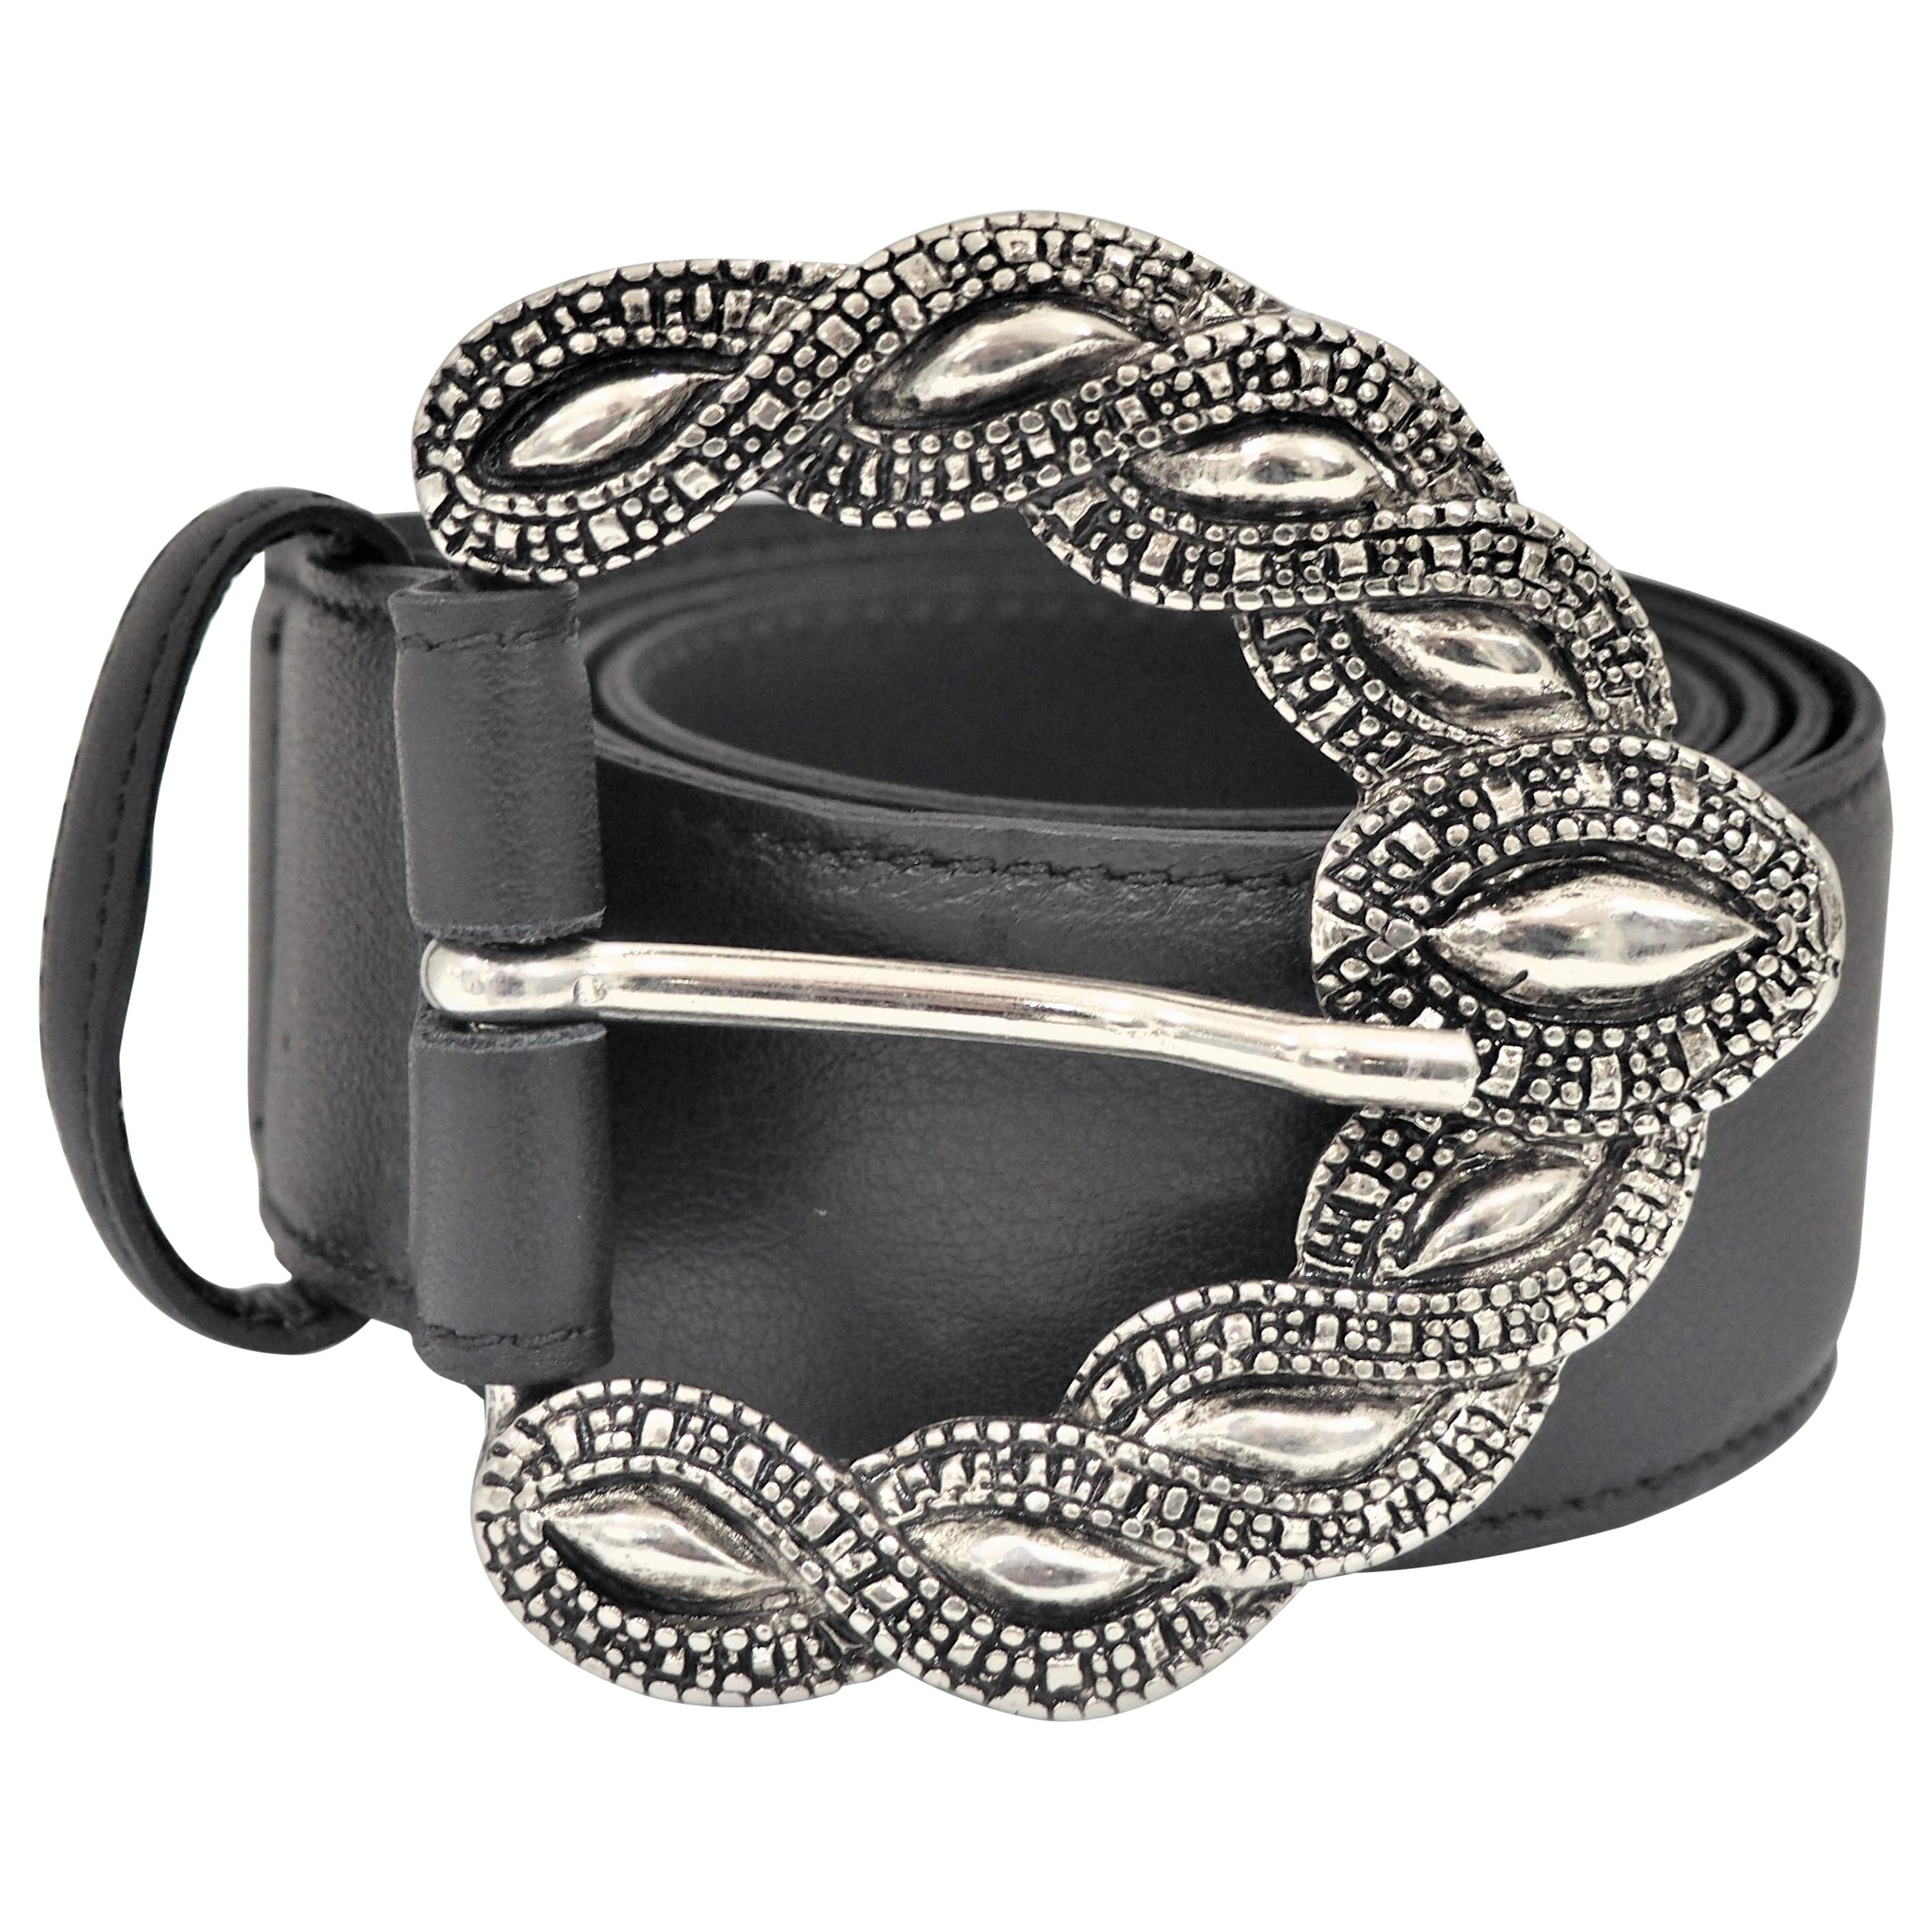 Black leather silver hardware belt NWOT